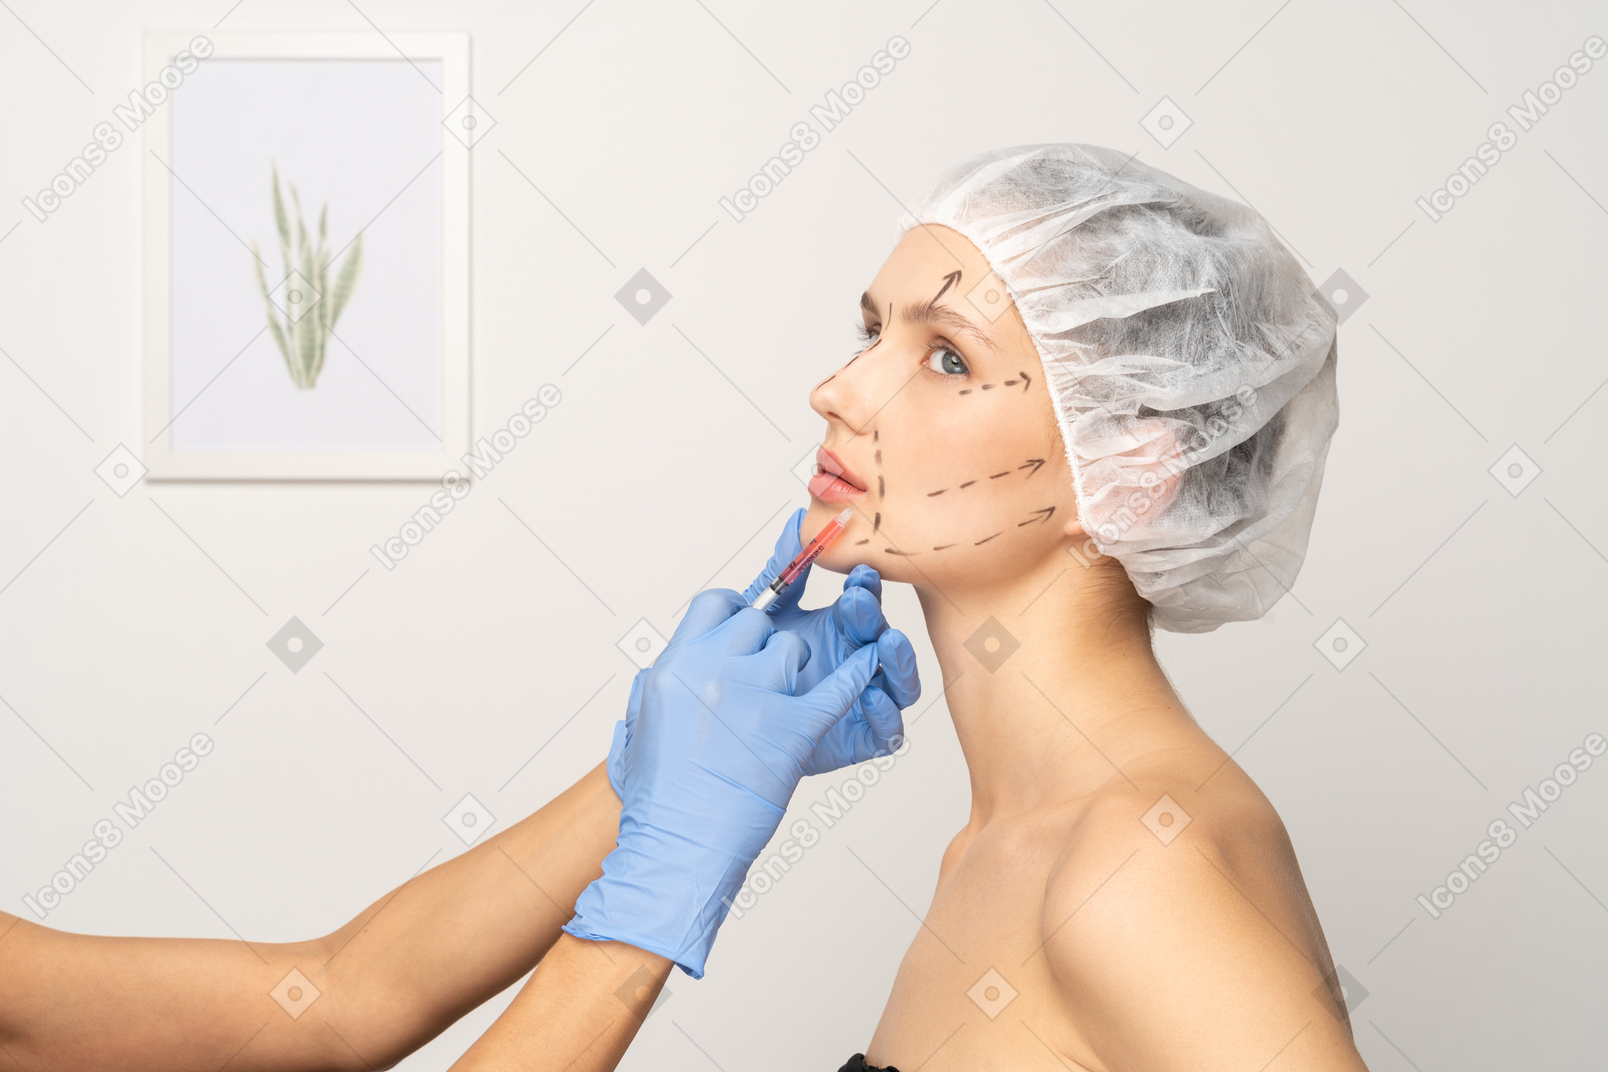 フィラー注射を受けている顔のマーキングを持つ若い女性